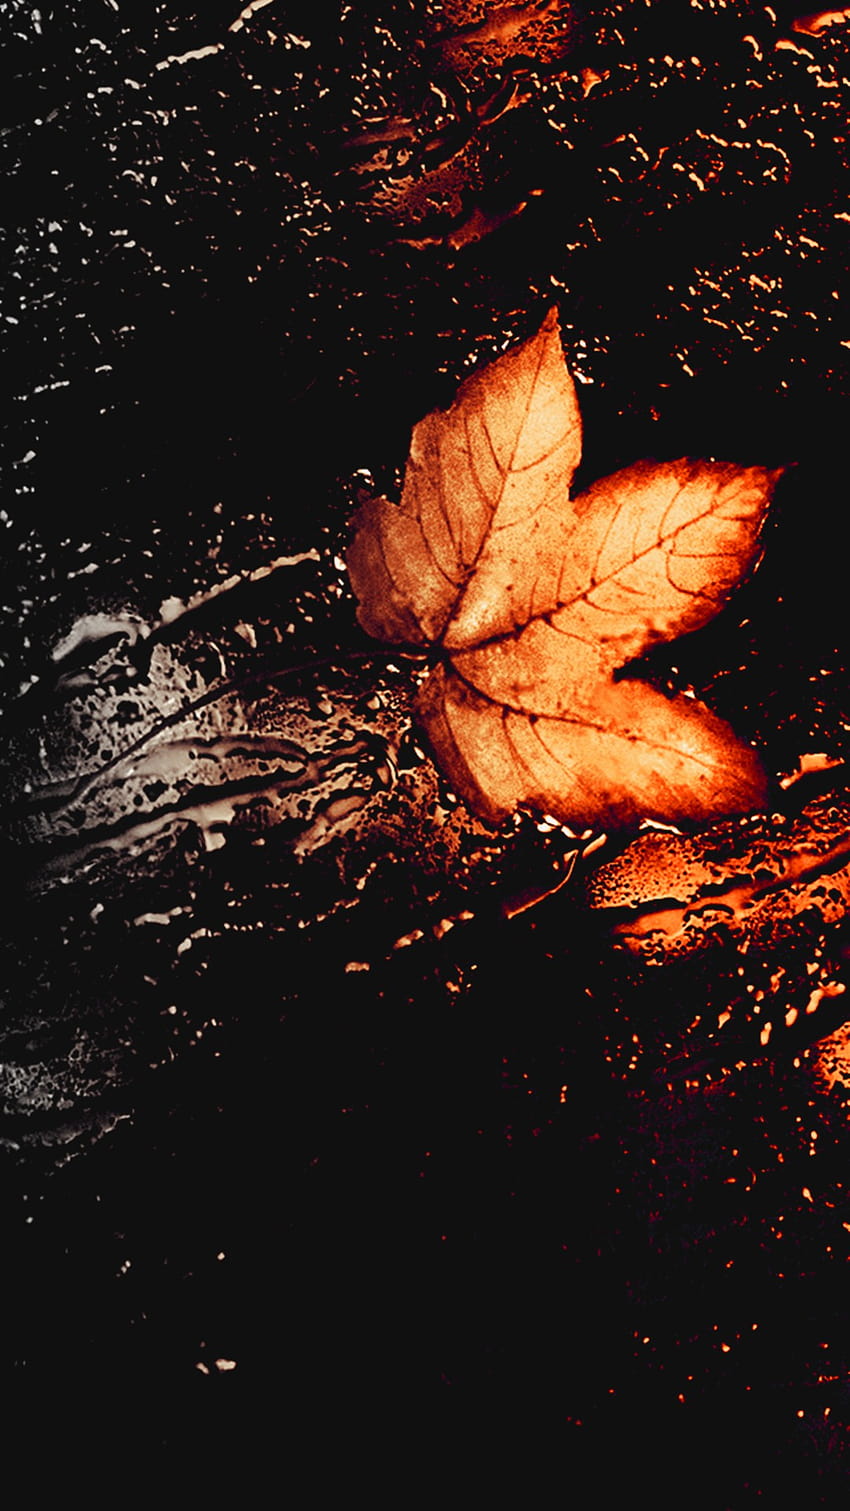 Autumn Wallpapers Free HD Download 500 HQ  Unsplash